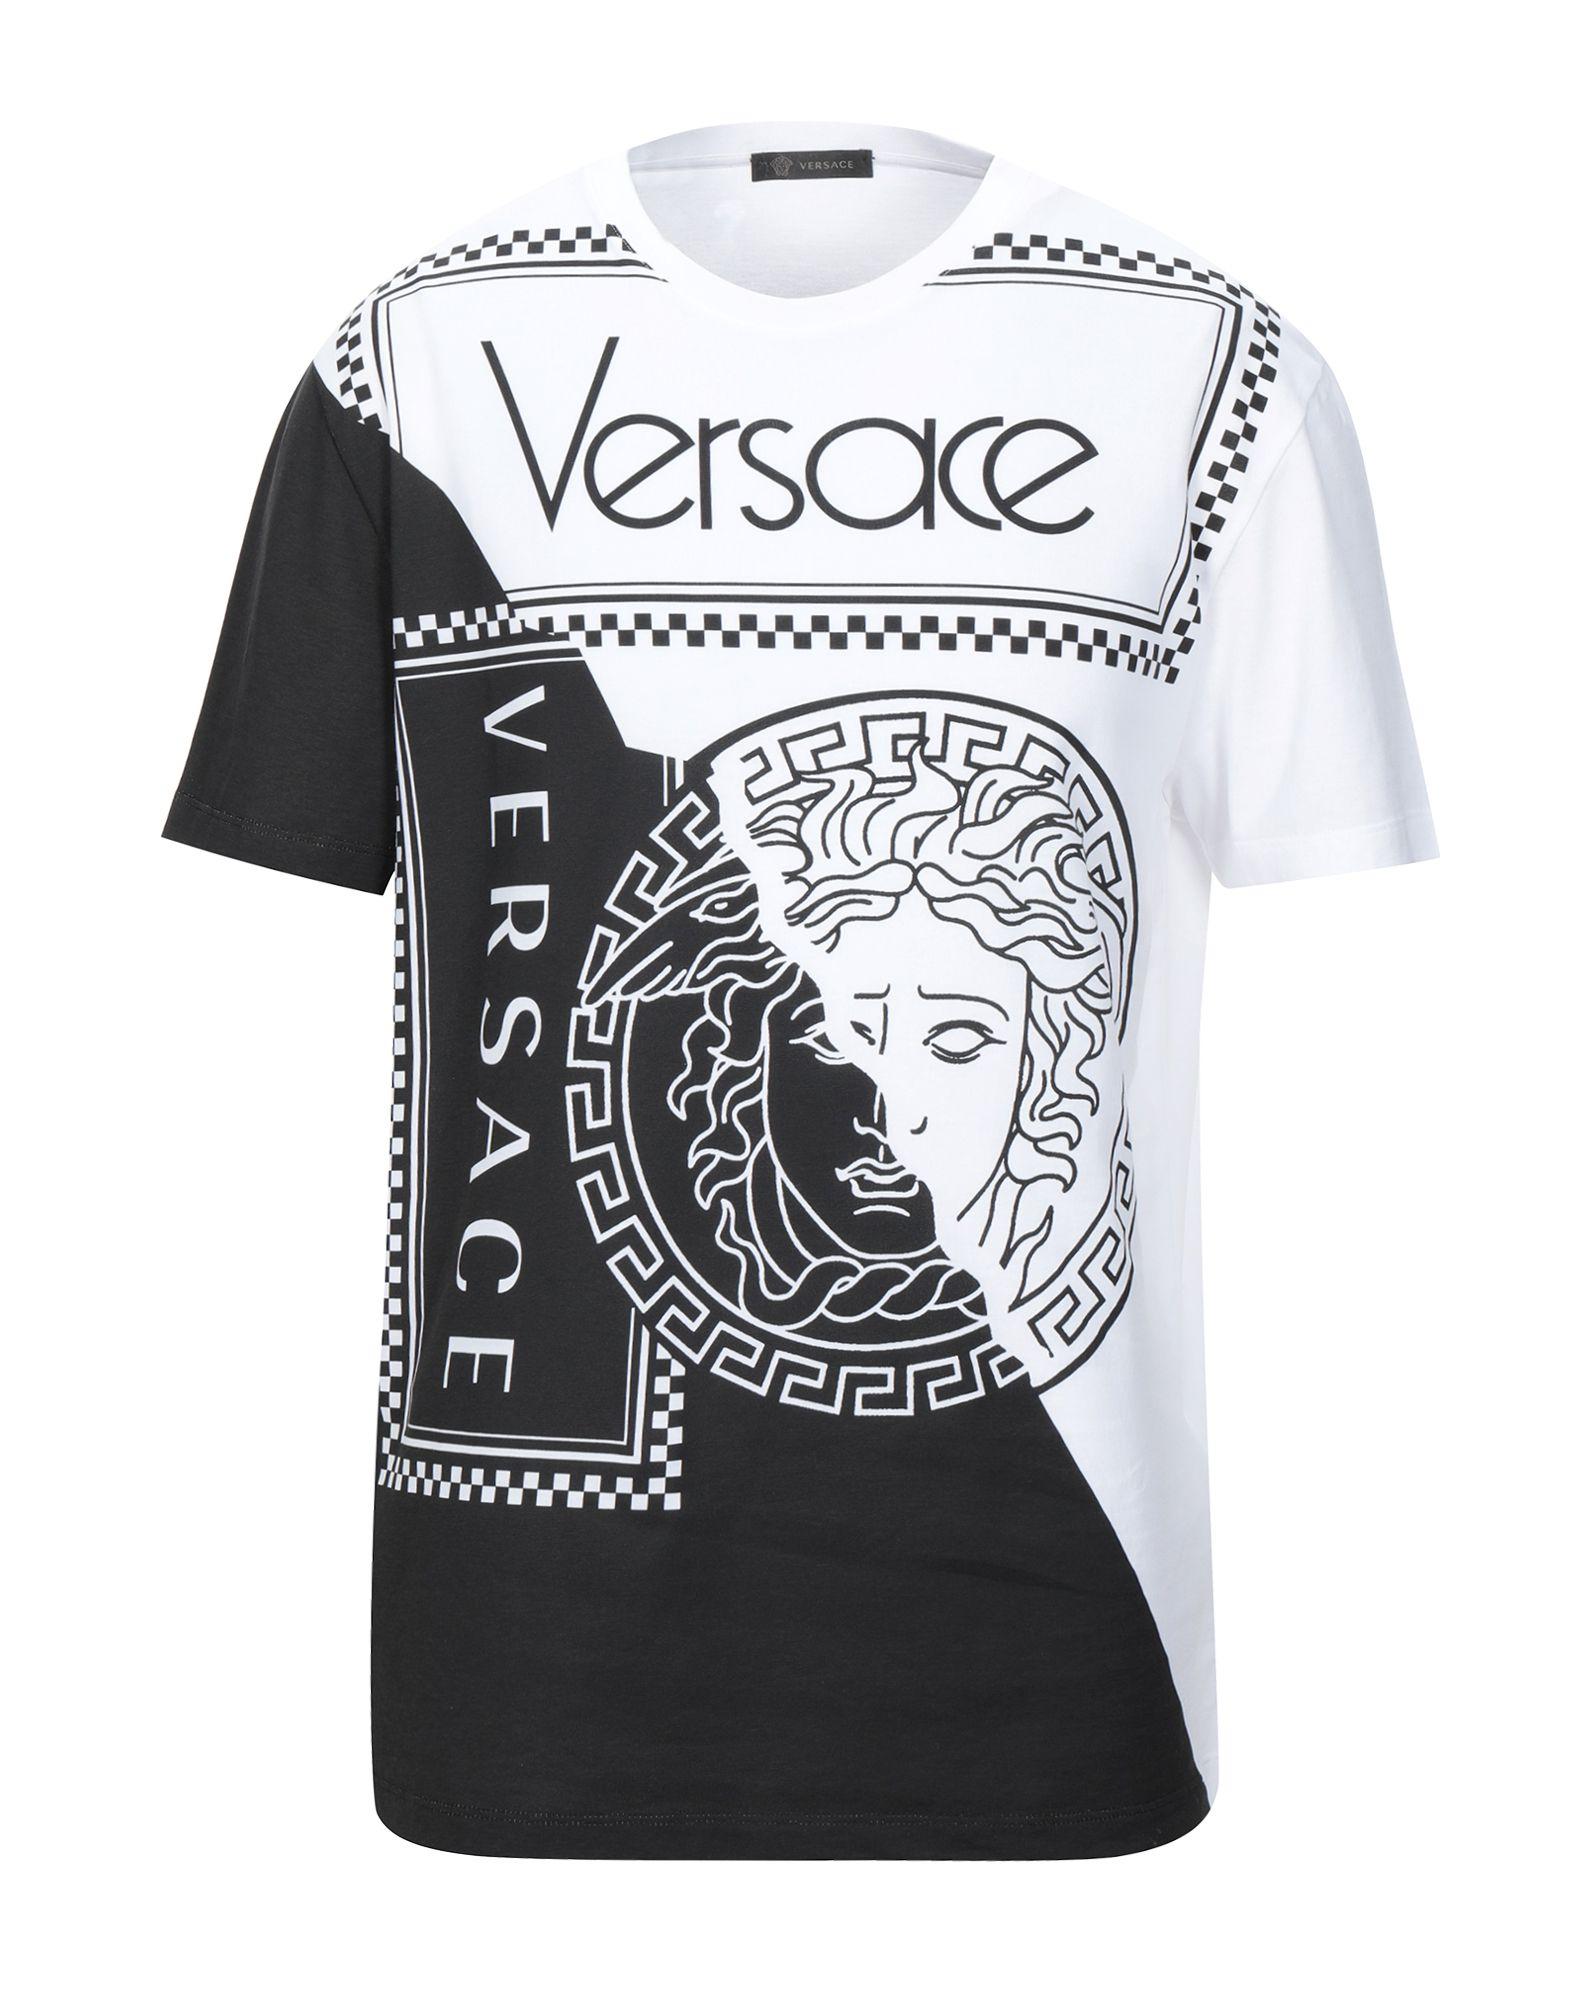 versace tshirt black